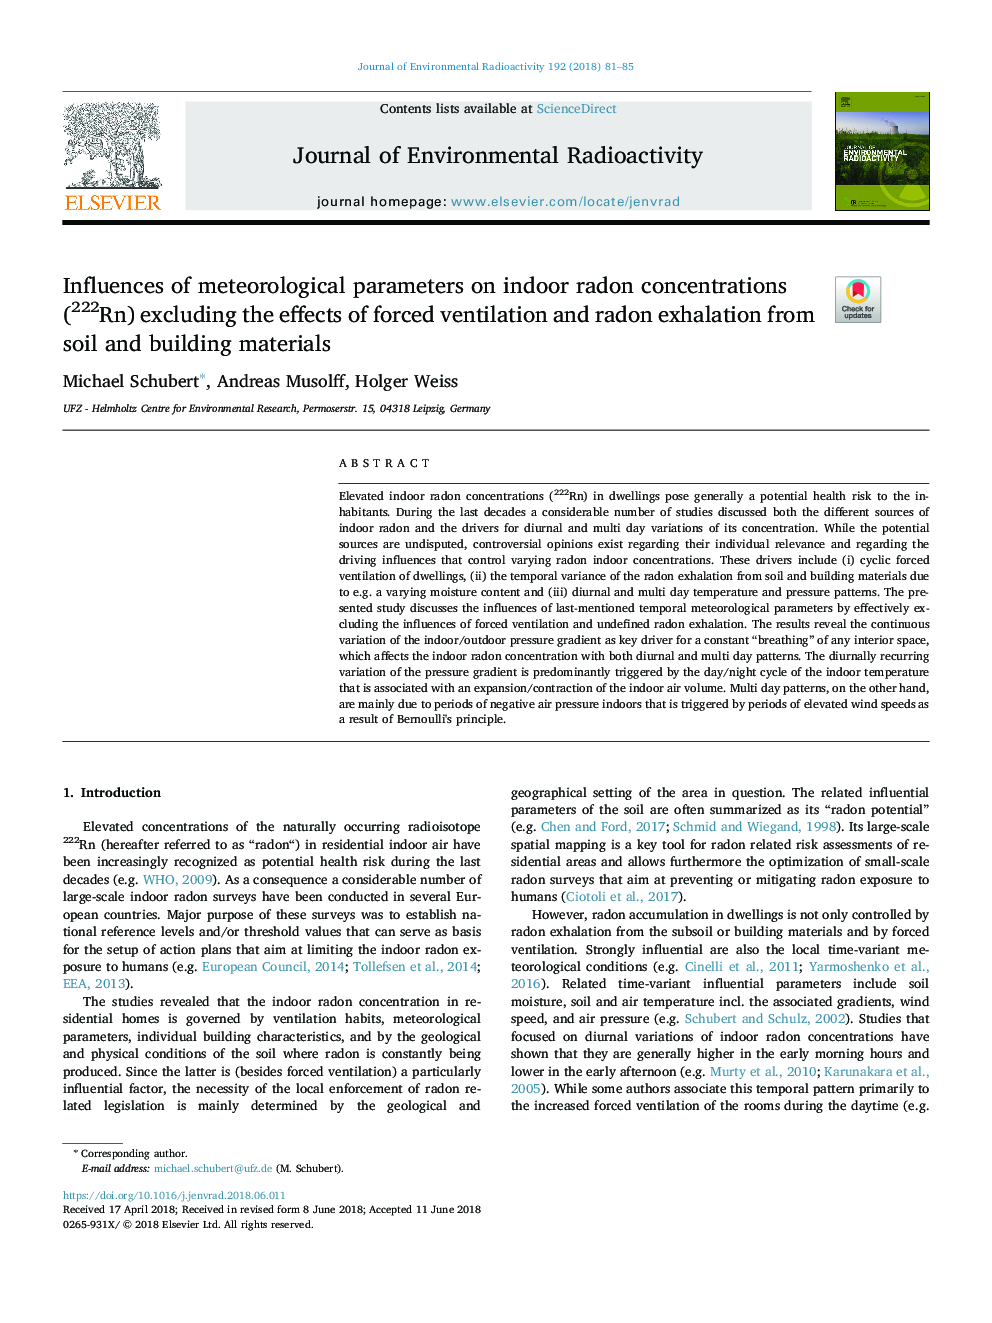 تأثیر پارامترهای هواشناسی بر غلظت های رادون داخلی (222 روپیه) به استثنای اثرات تهویه مجاز و استنشاق رادون از خاک و مصالح ساختمانی 